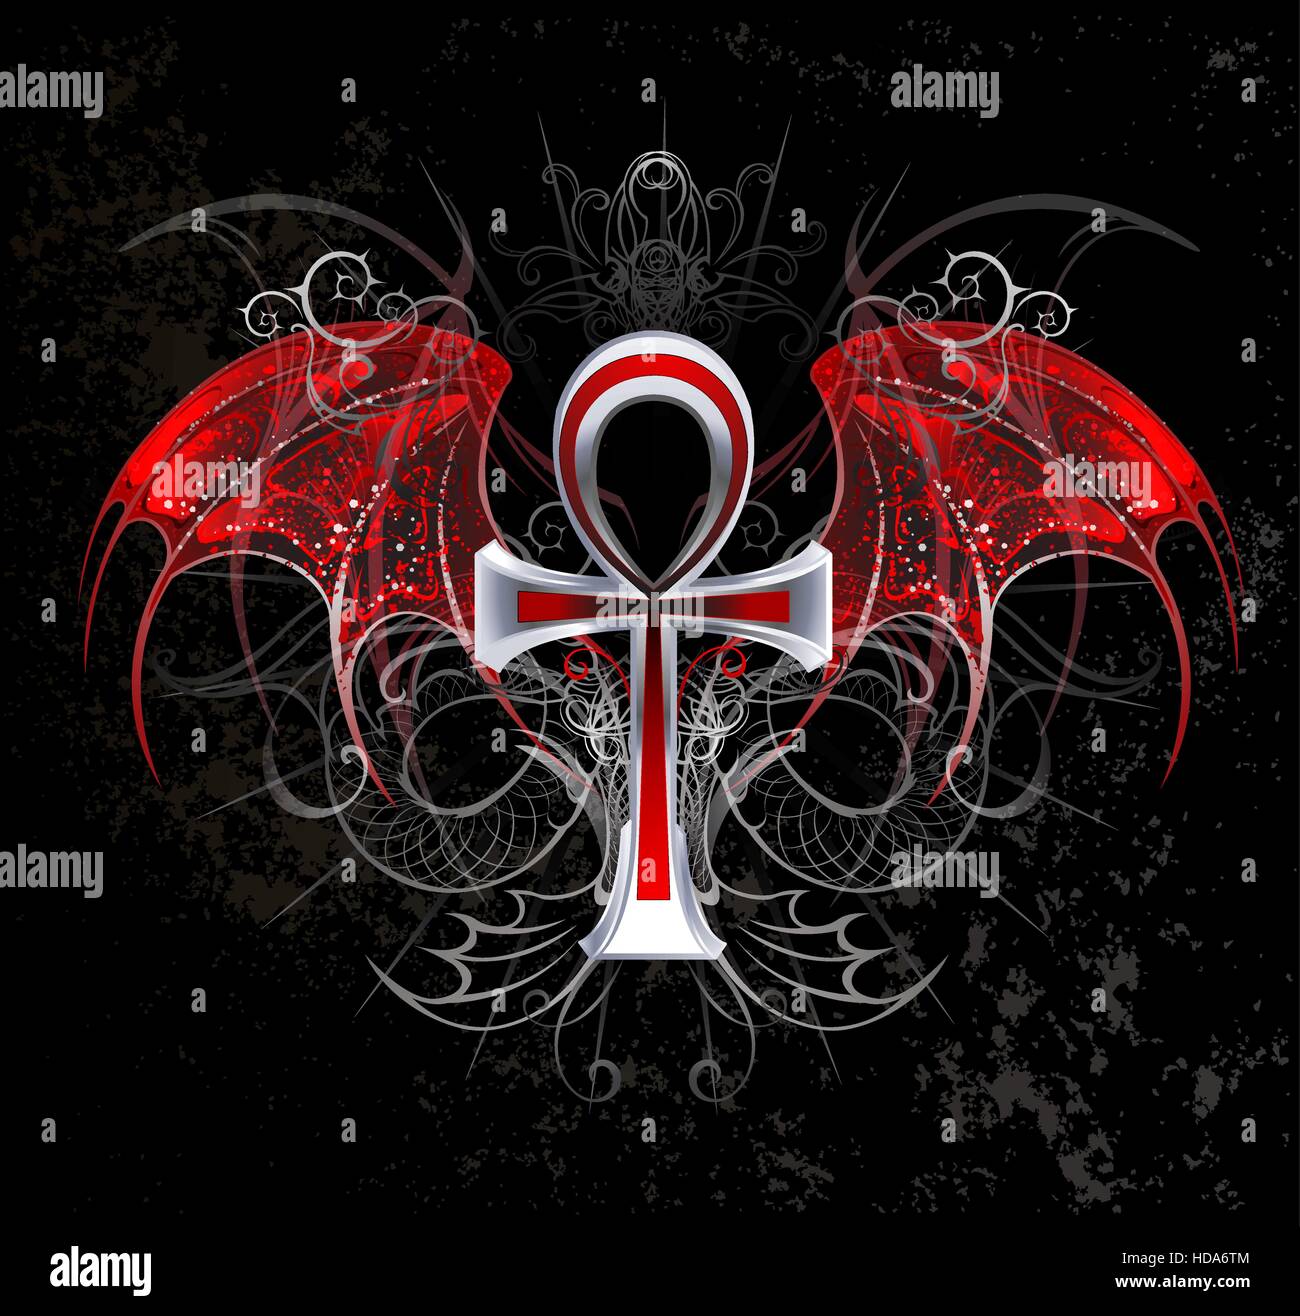 Silber Ankh Vampir mit roten Flügeln auf einem schwarzen Hintergrund. Stock Vektor